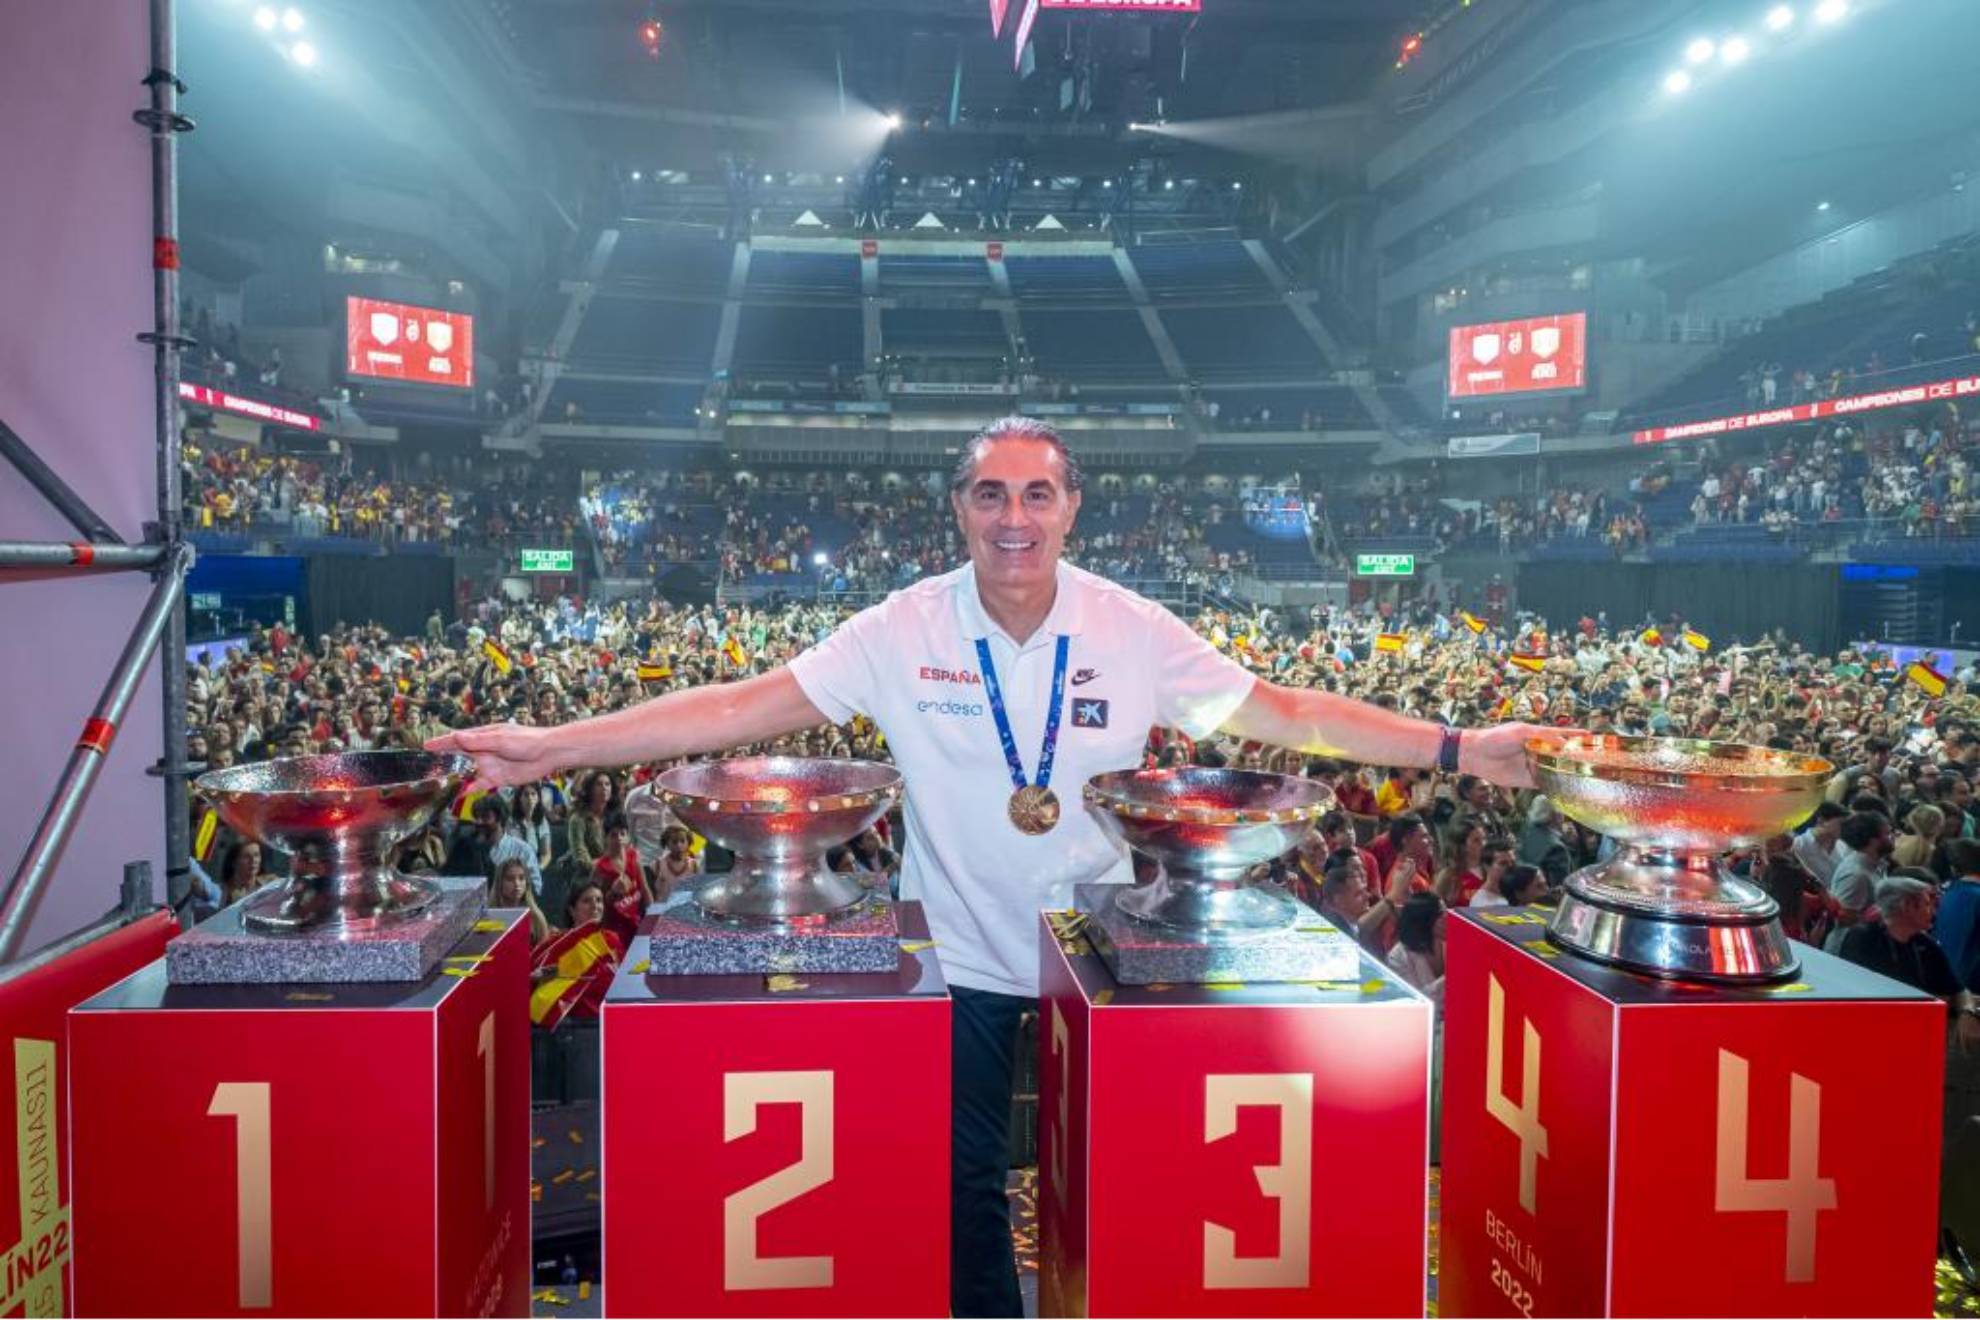 Scariolo posa con los cuatro trofeos de campeón del Europeo que España ha ganado bajo su dirección en el banquillo.